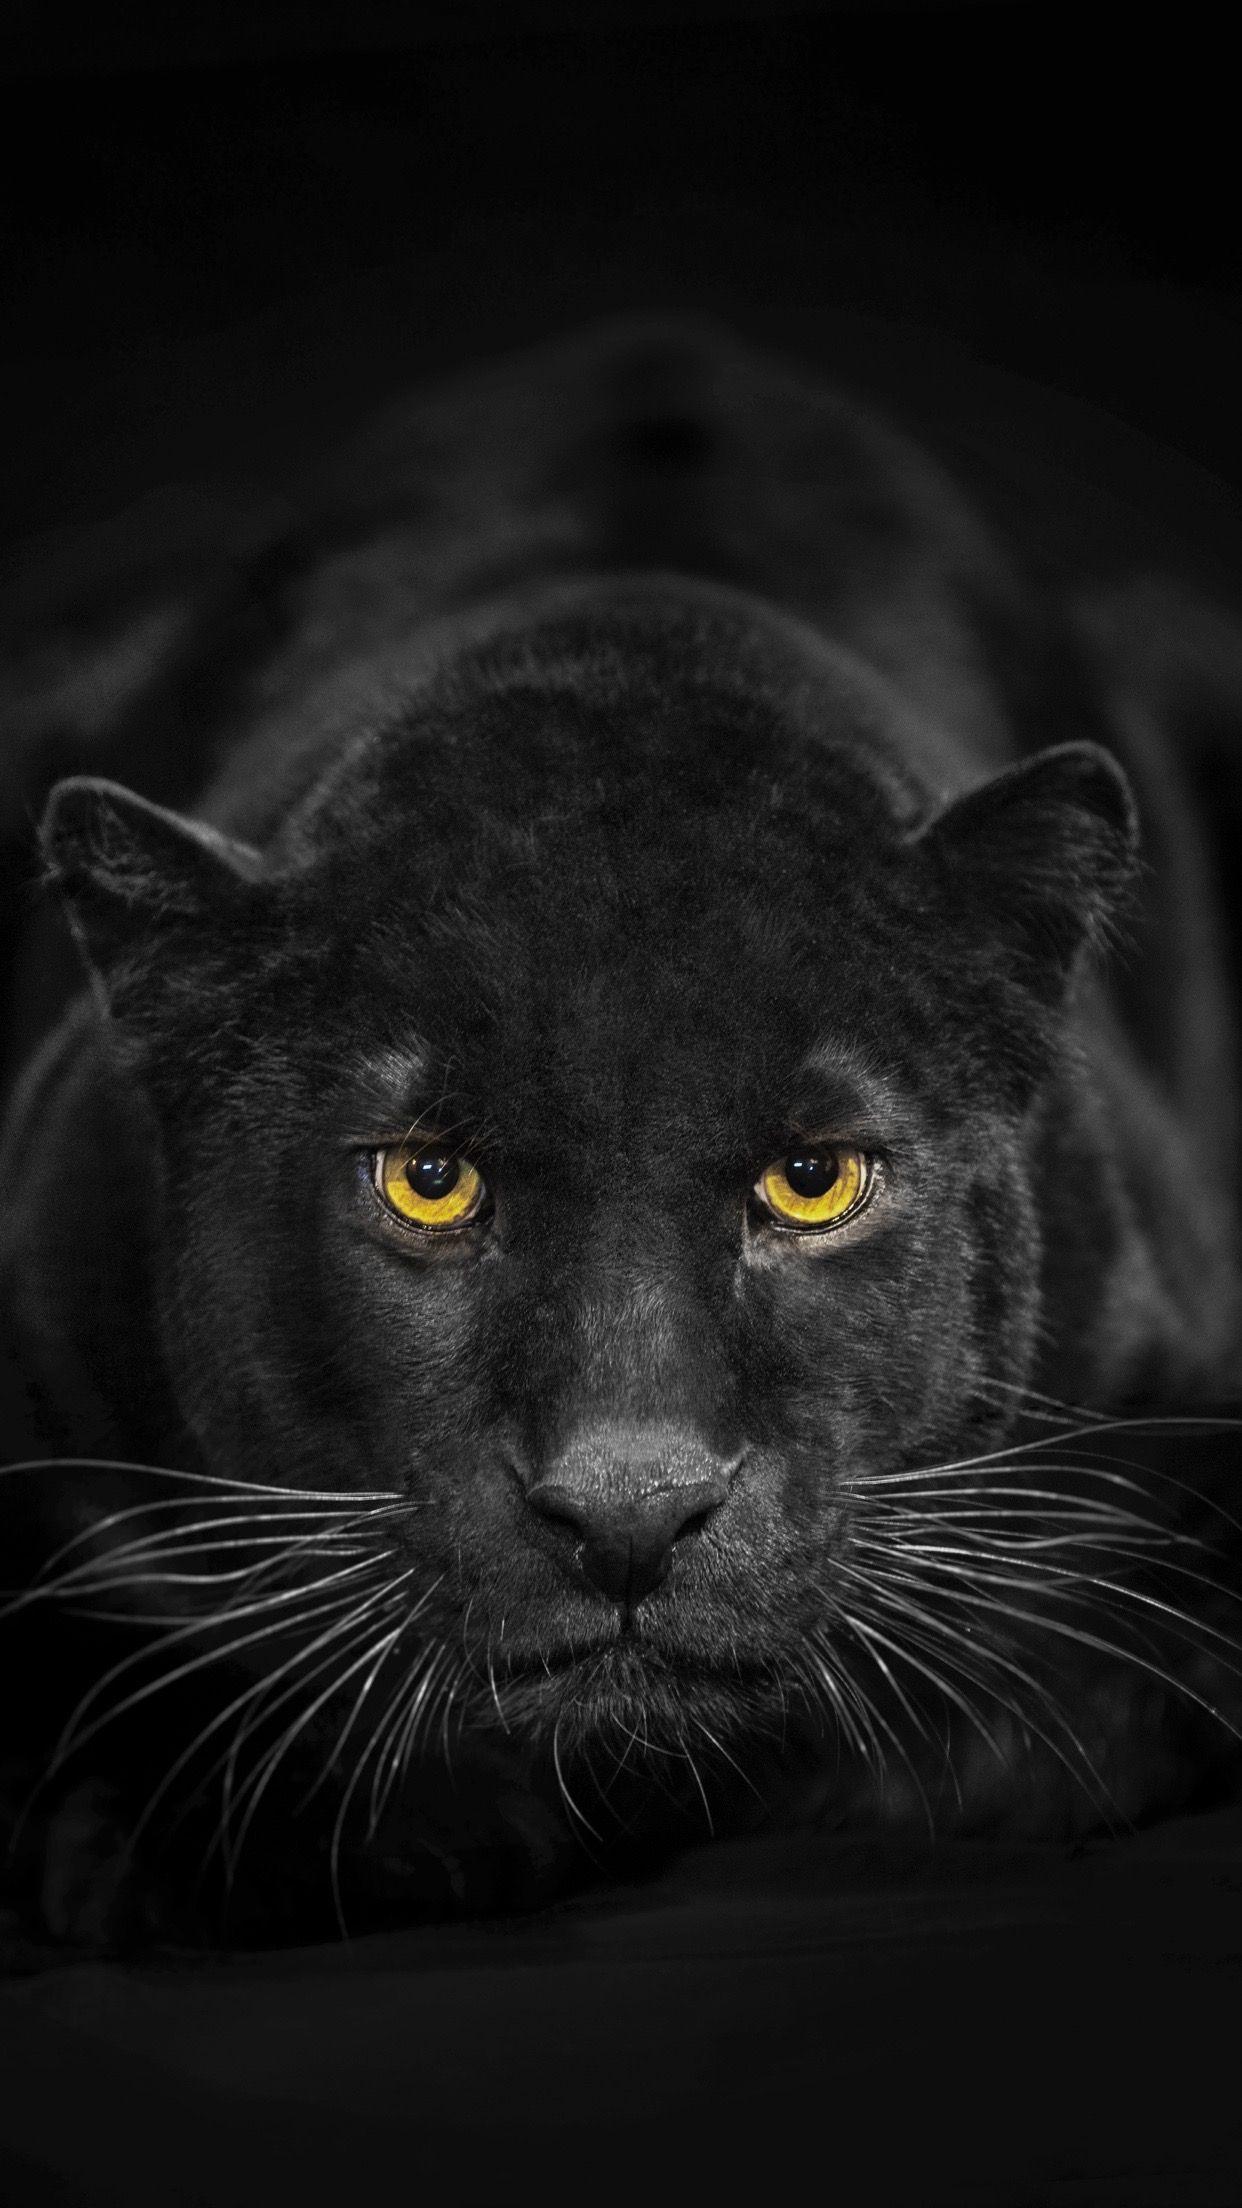 Black Panther Animal Iphone Wallpapers Top Free Black Panther Animal